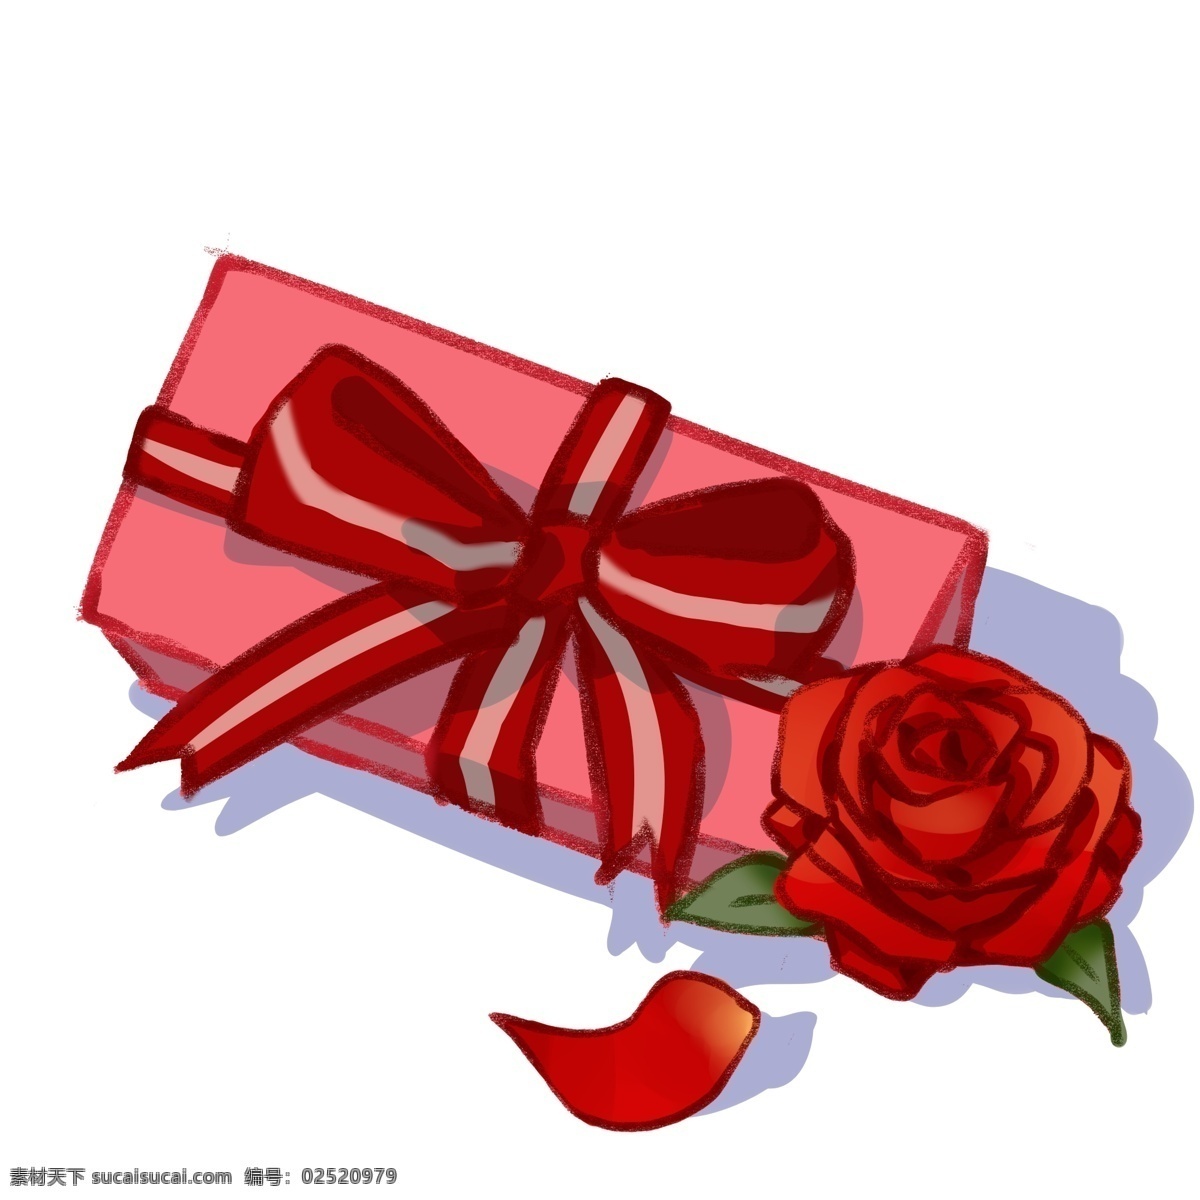 情人节 礼物 盒 插画 红色的玫瑰花 卡通插画 情人节礼物 红色的蝴蝶结 手绘 粉色的礼盒